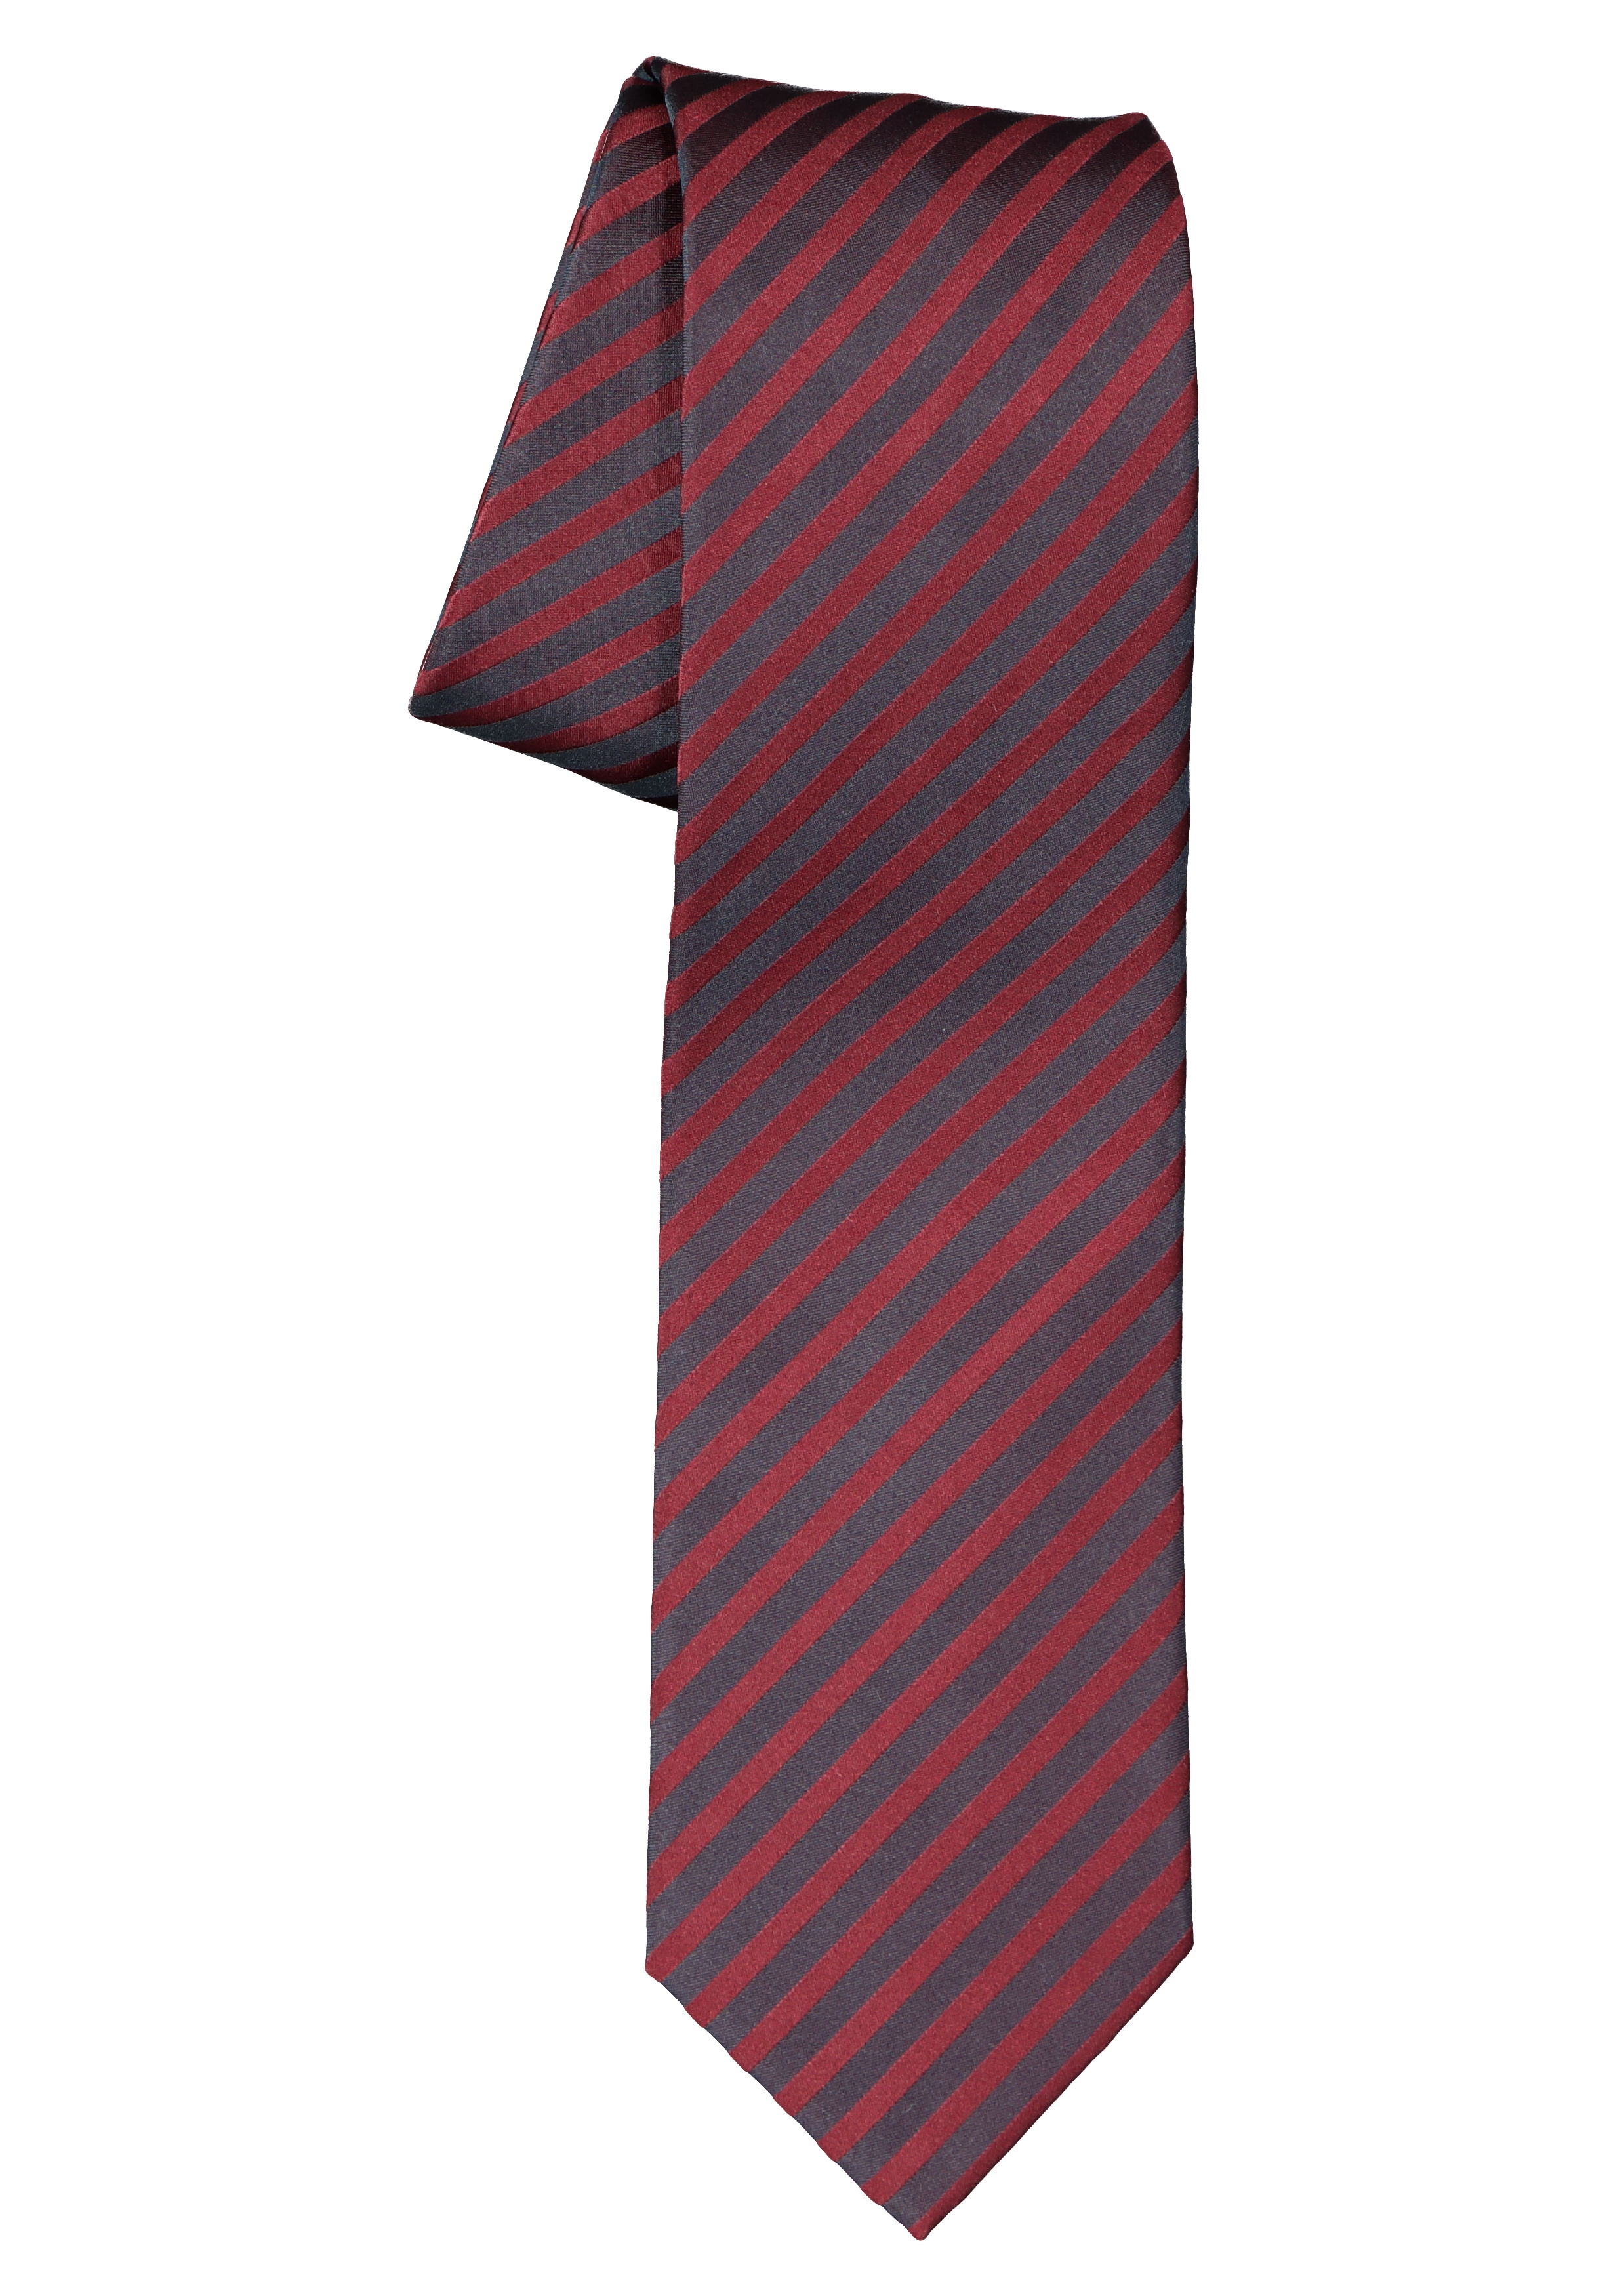 OLYMP stropdas, donkerrood met zwart gestreept  